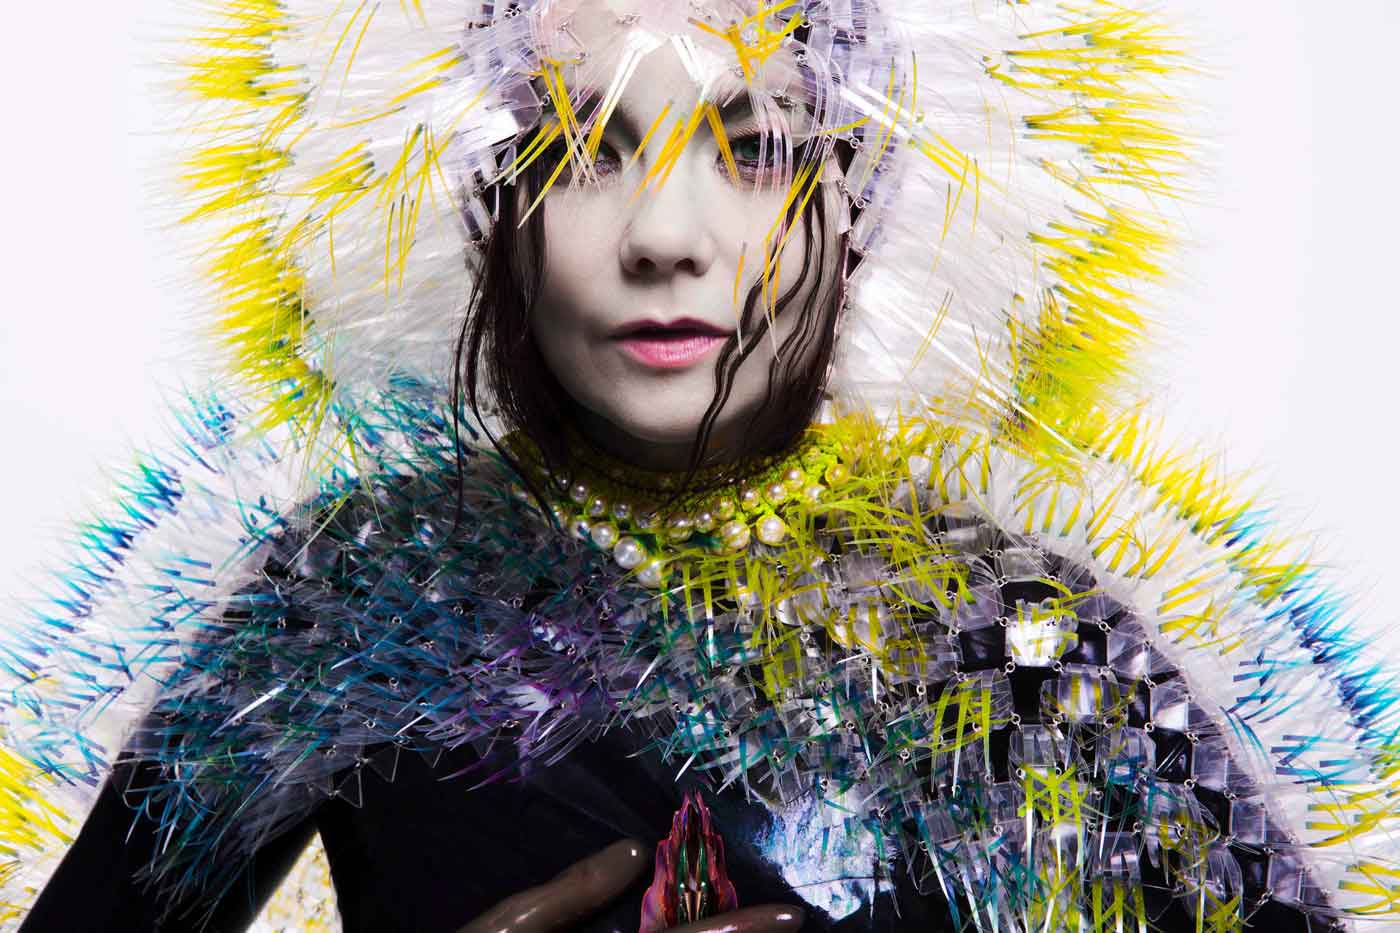 Nuevo álbum de Björk a la vista